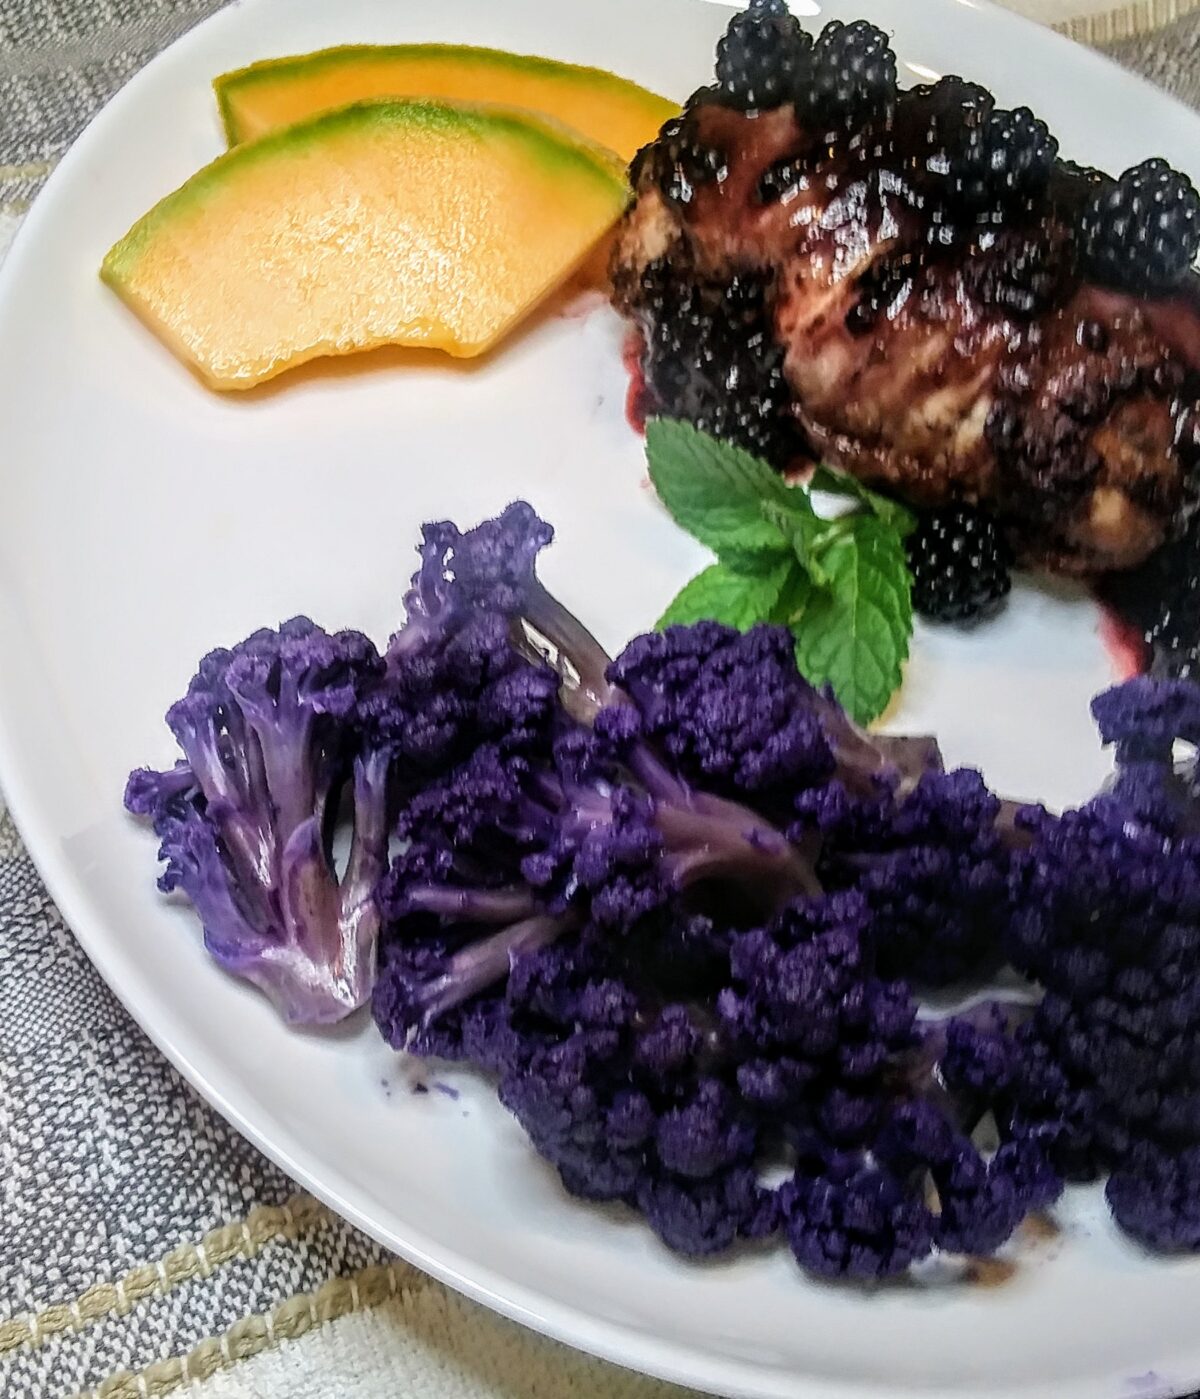 Blackberry Fennel chicken plated